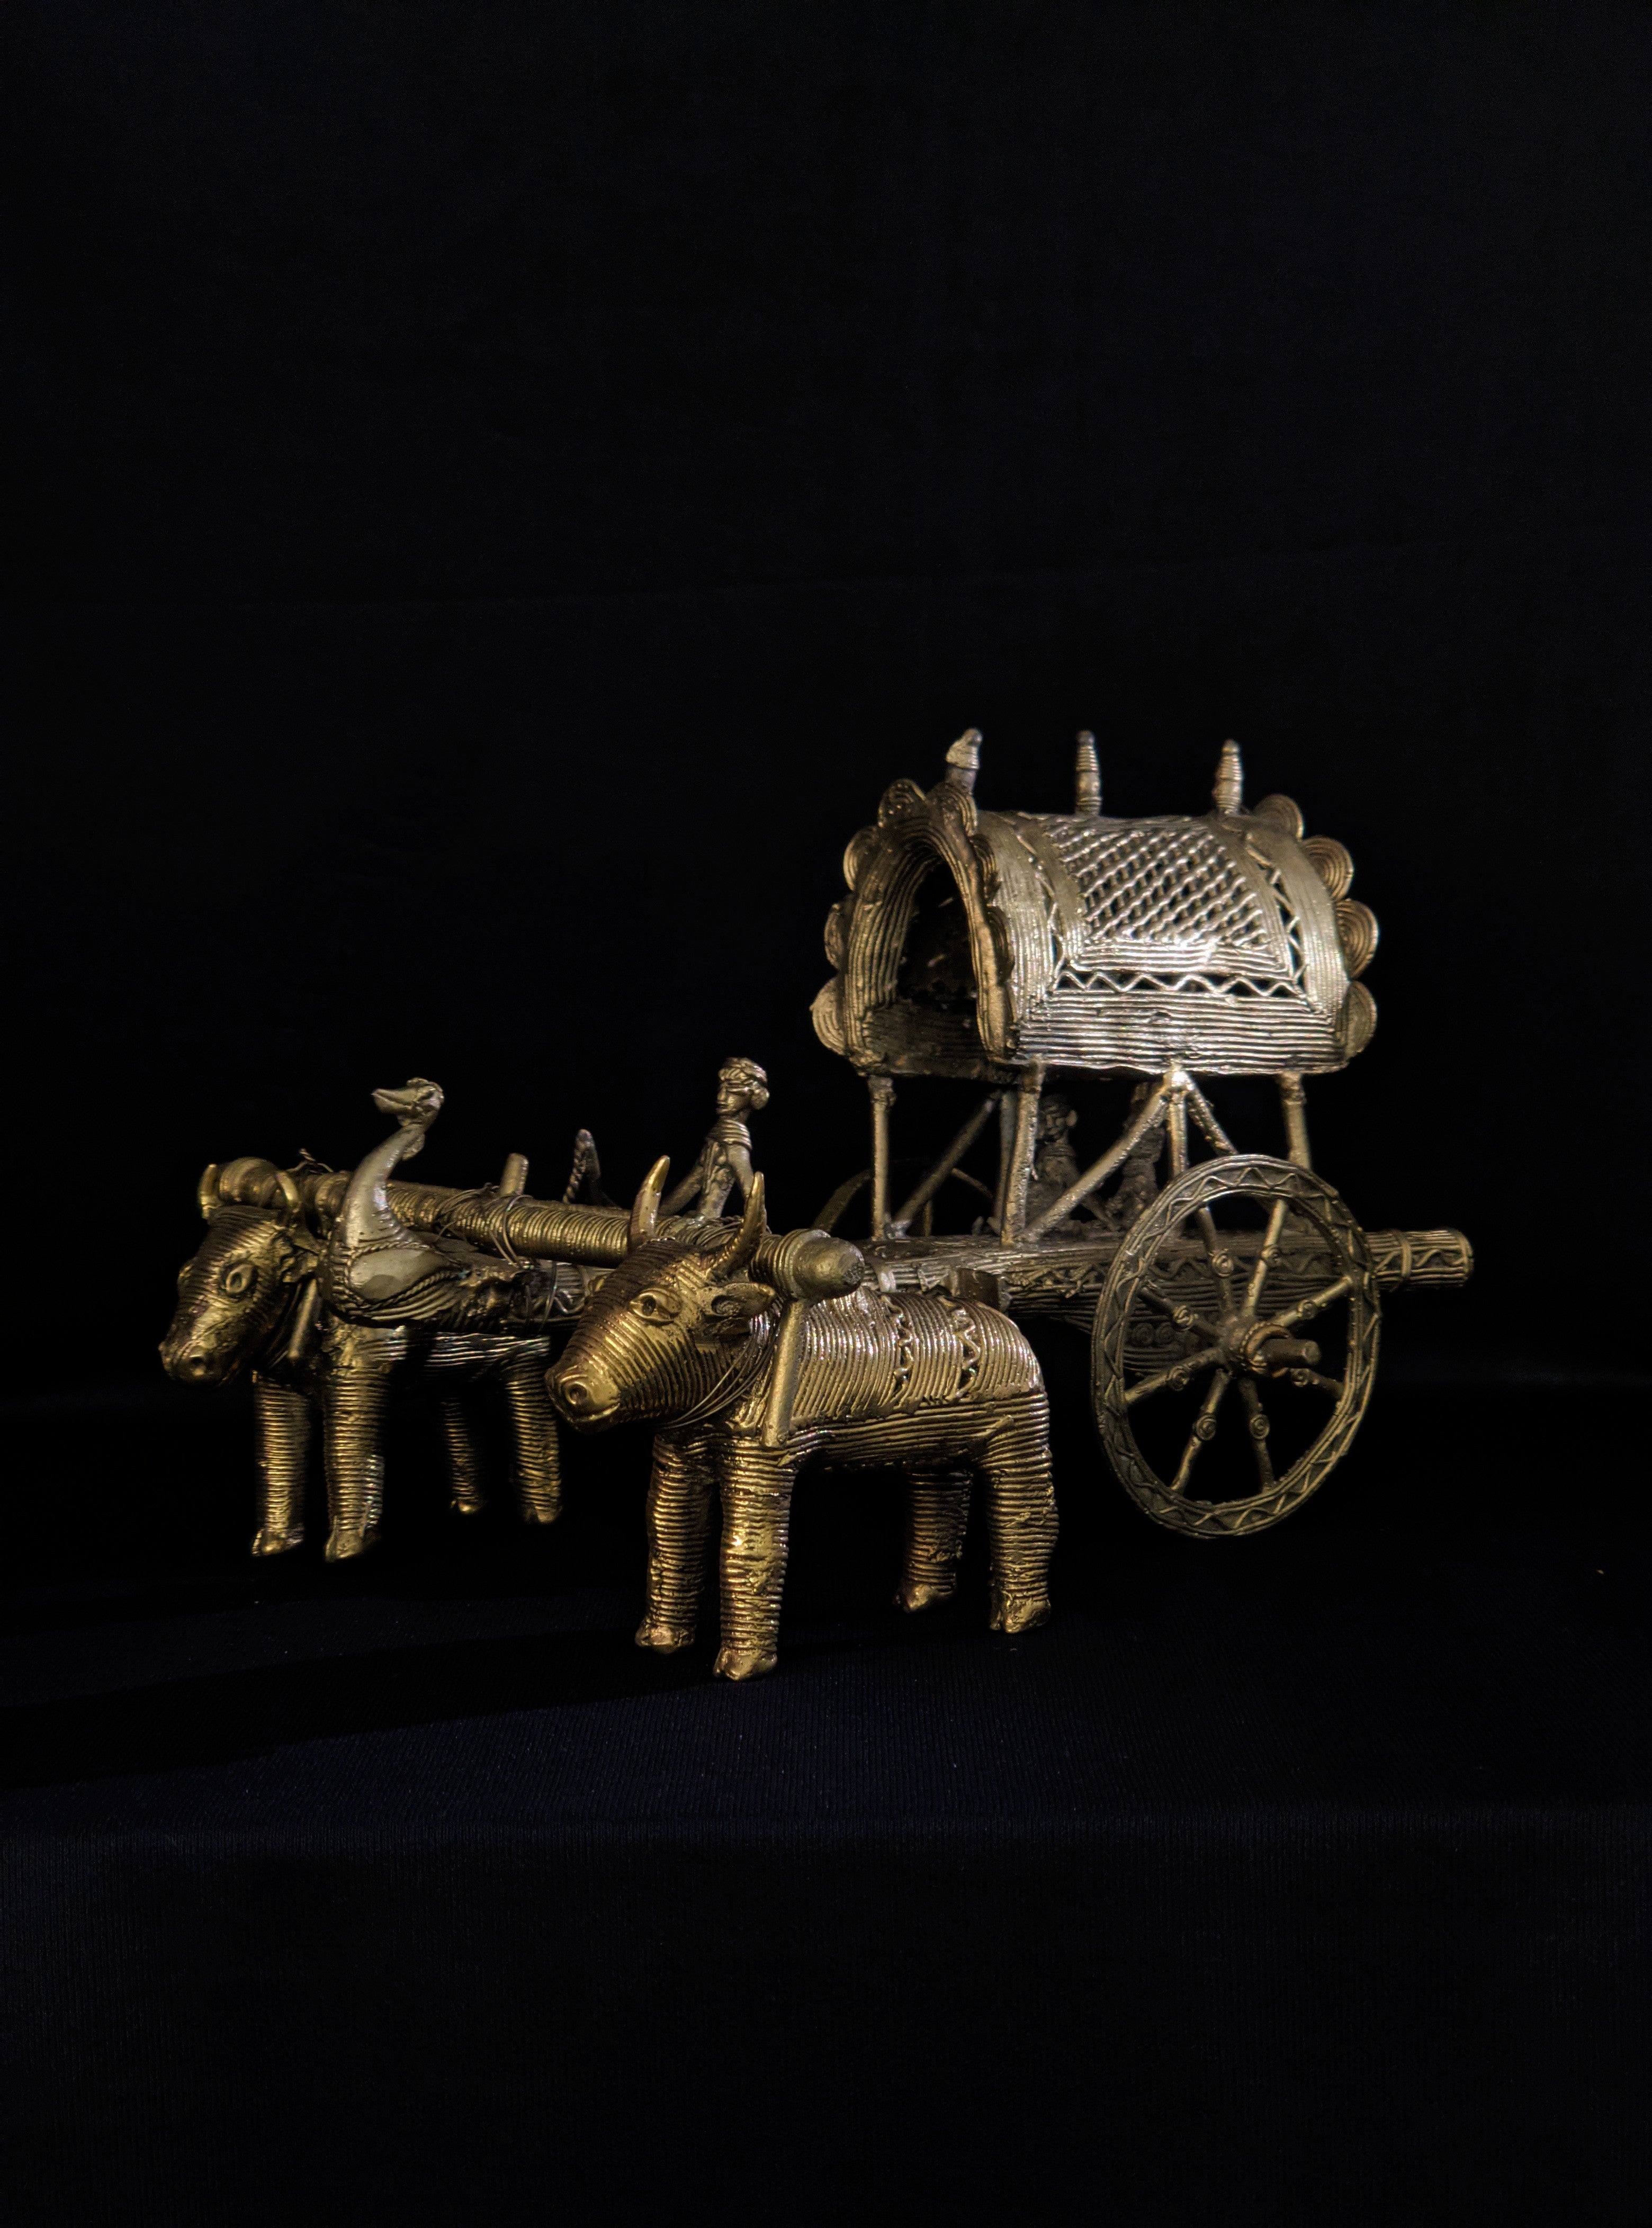 Dhokra Bullock Cart Brass Meta Craft